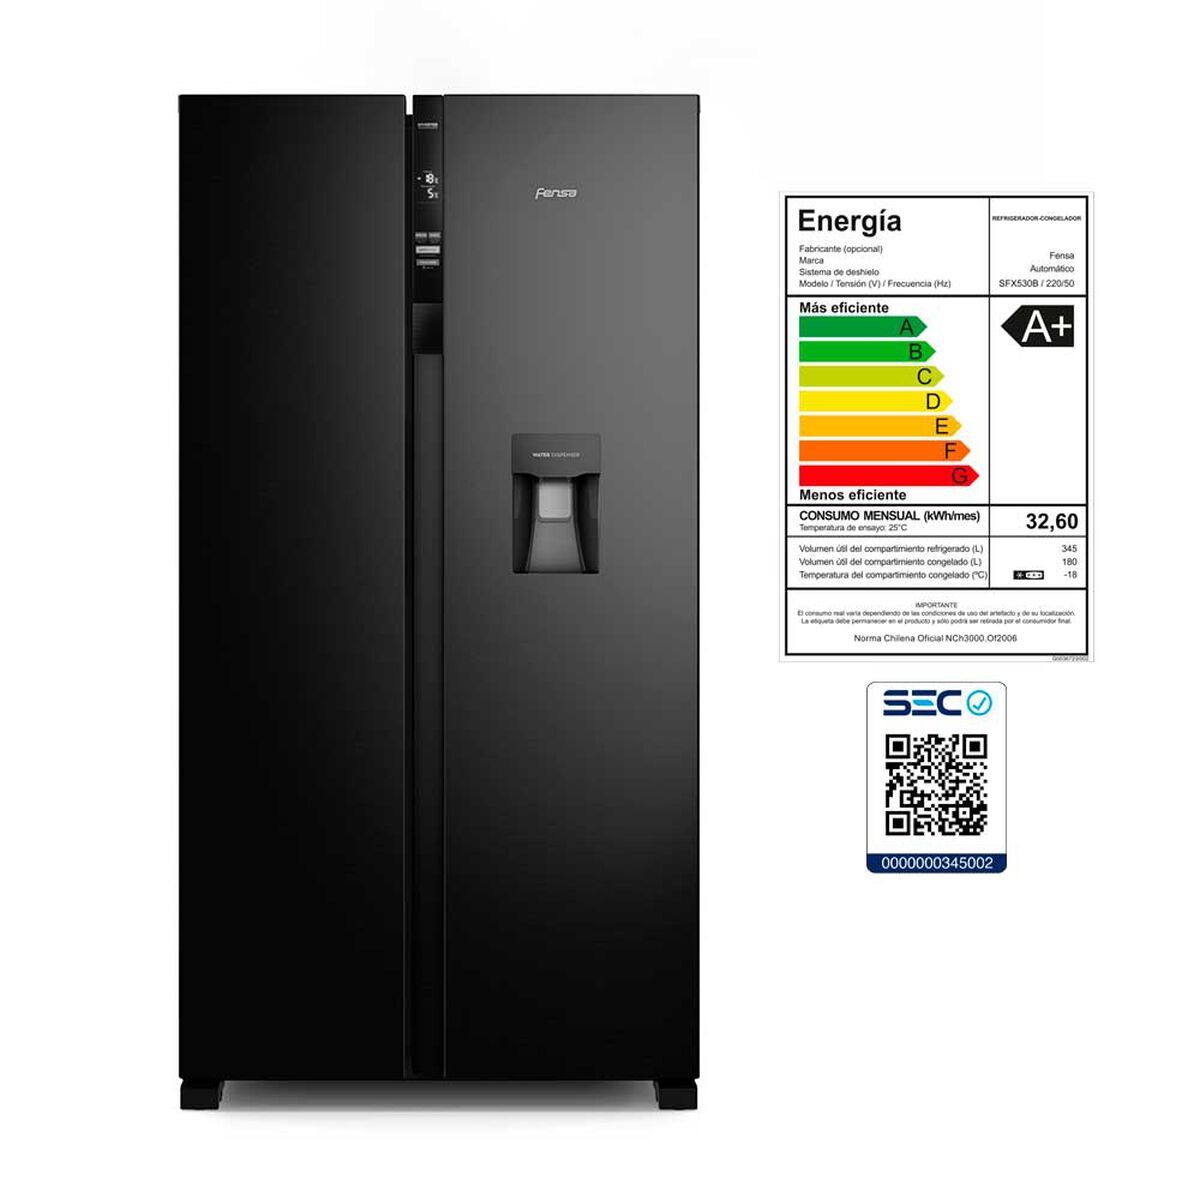 Refrigeradores: Samsung, LG, Fensa y más